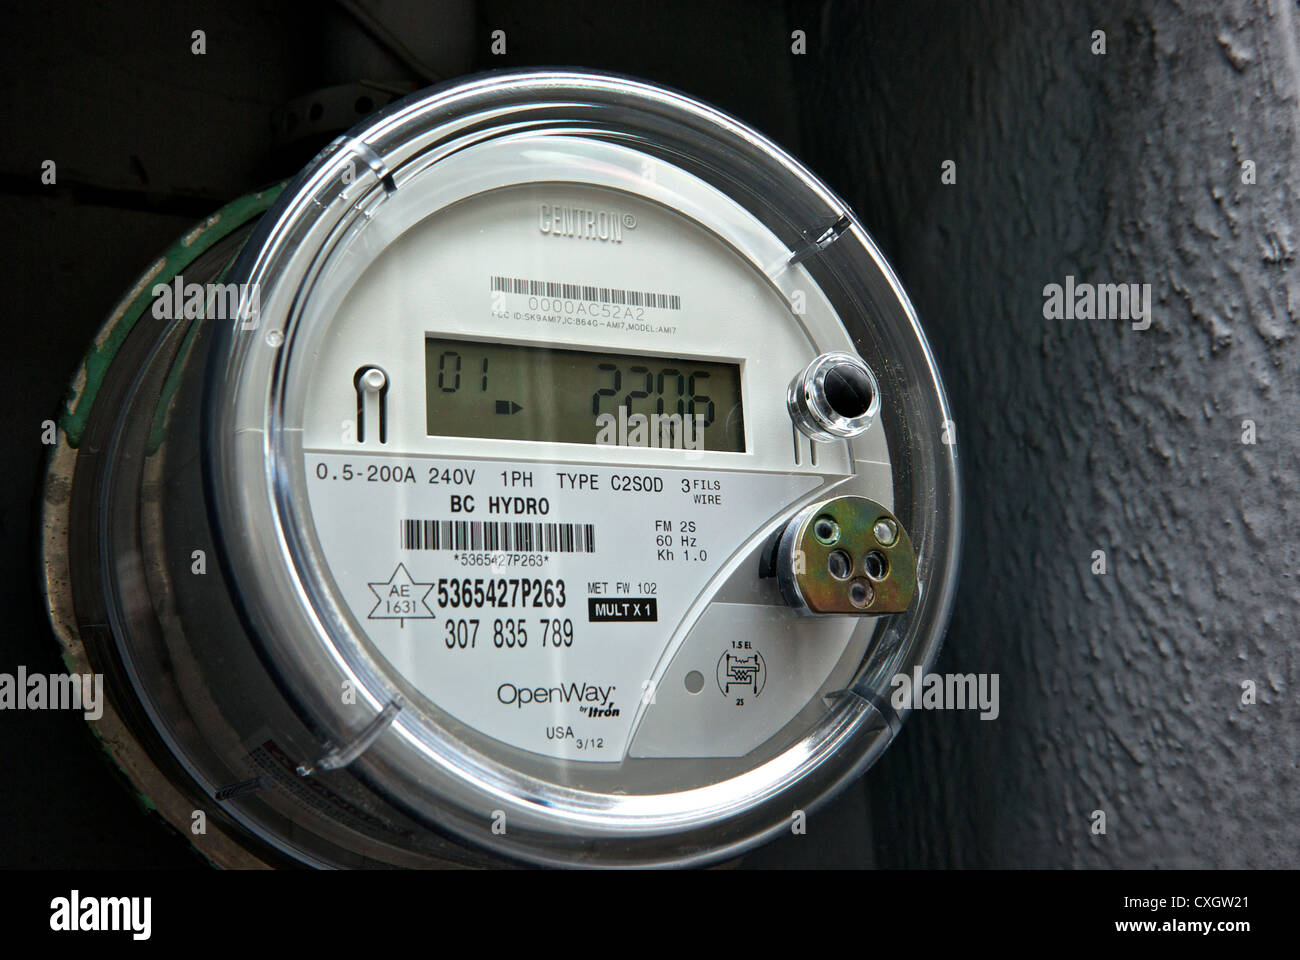 Centron BC Hydro transmission sans fil digital compteur d'électricité des ménages Banque D'Images